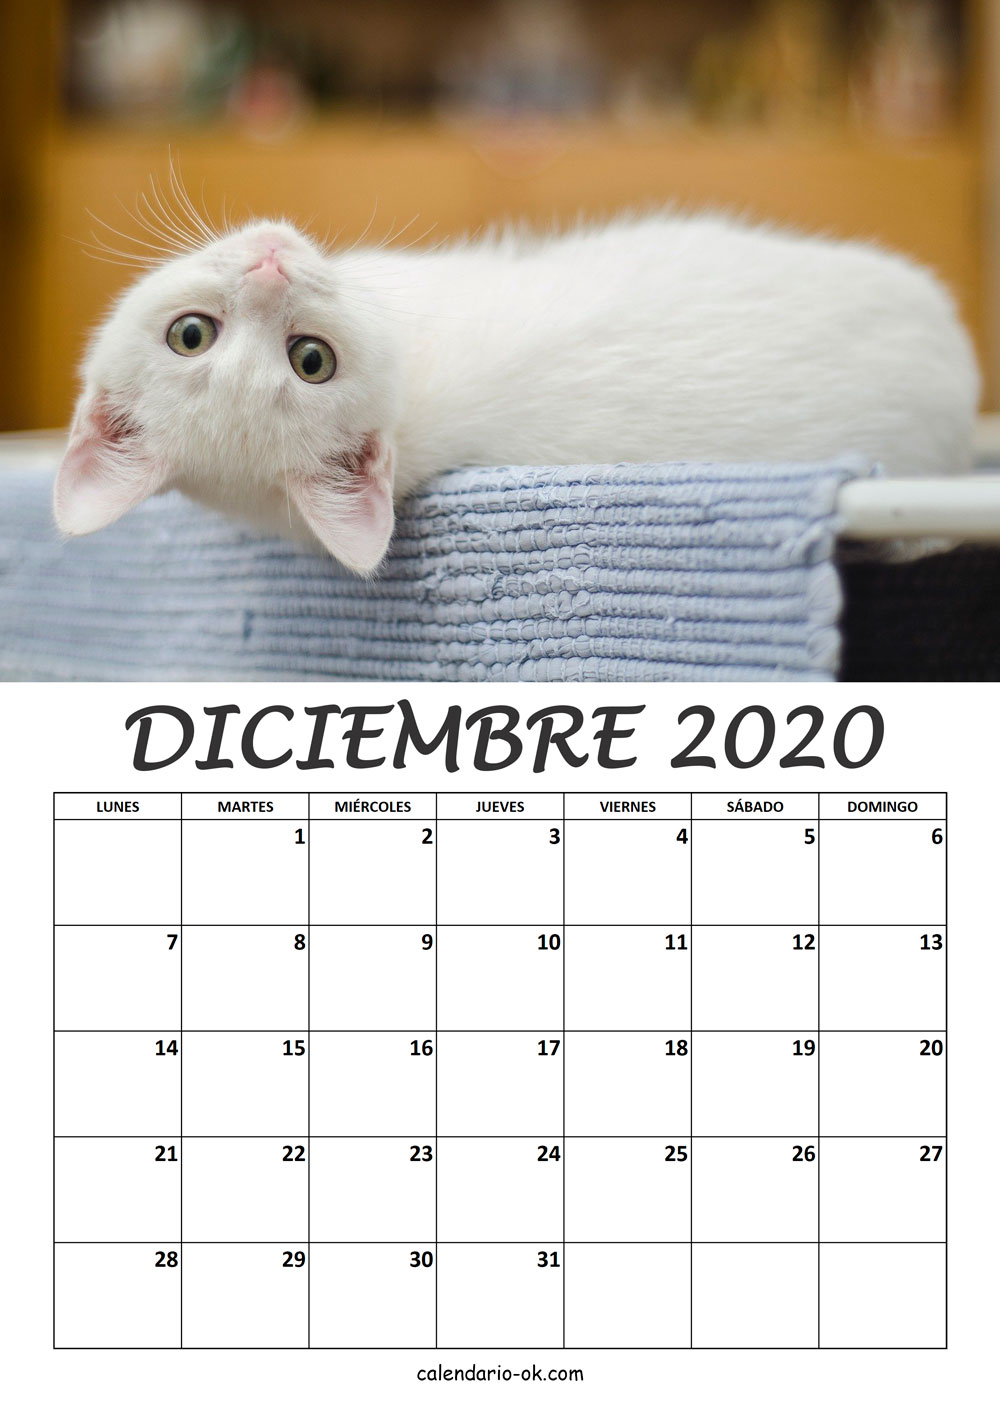 Calendario DICIEMBRE 2020 de GATOS